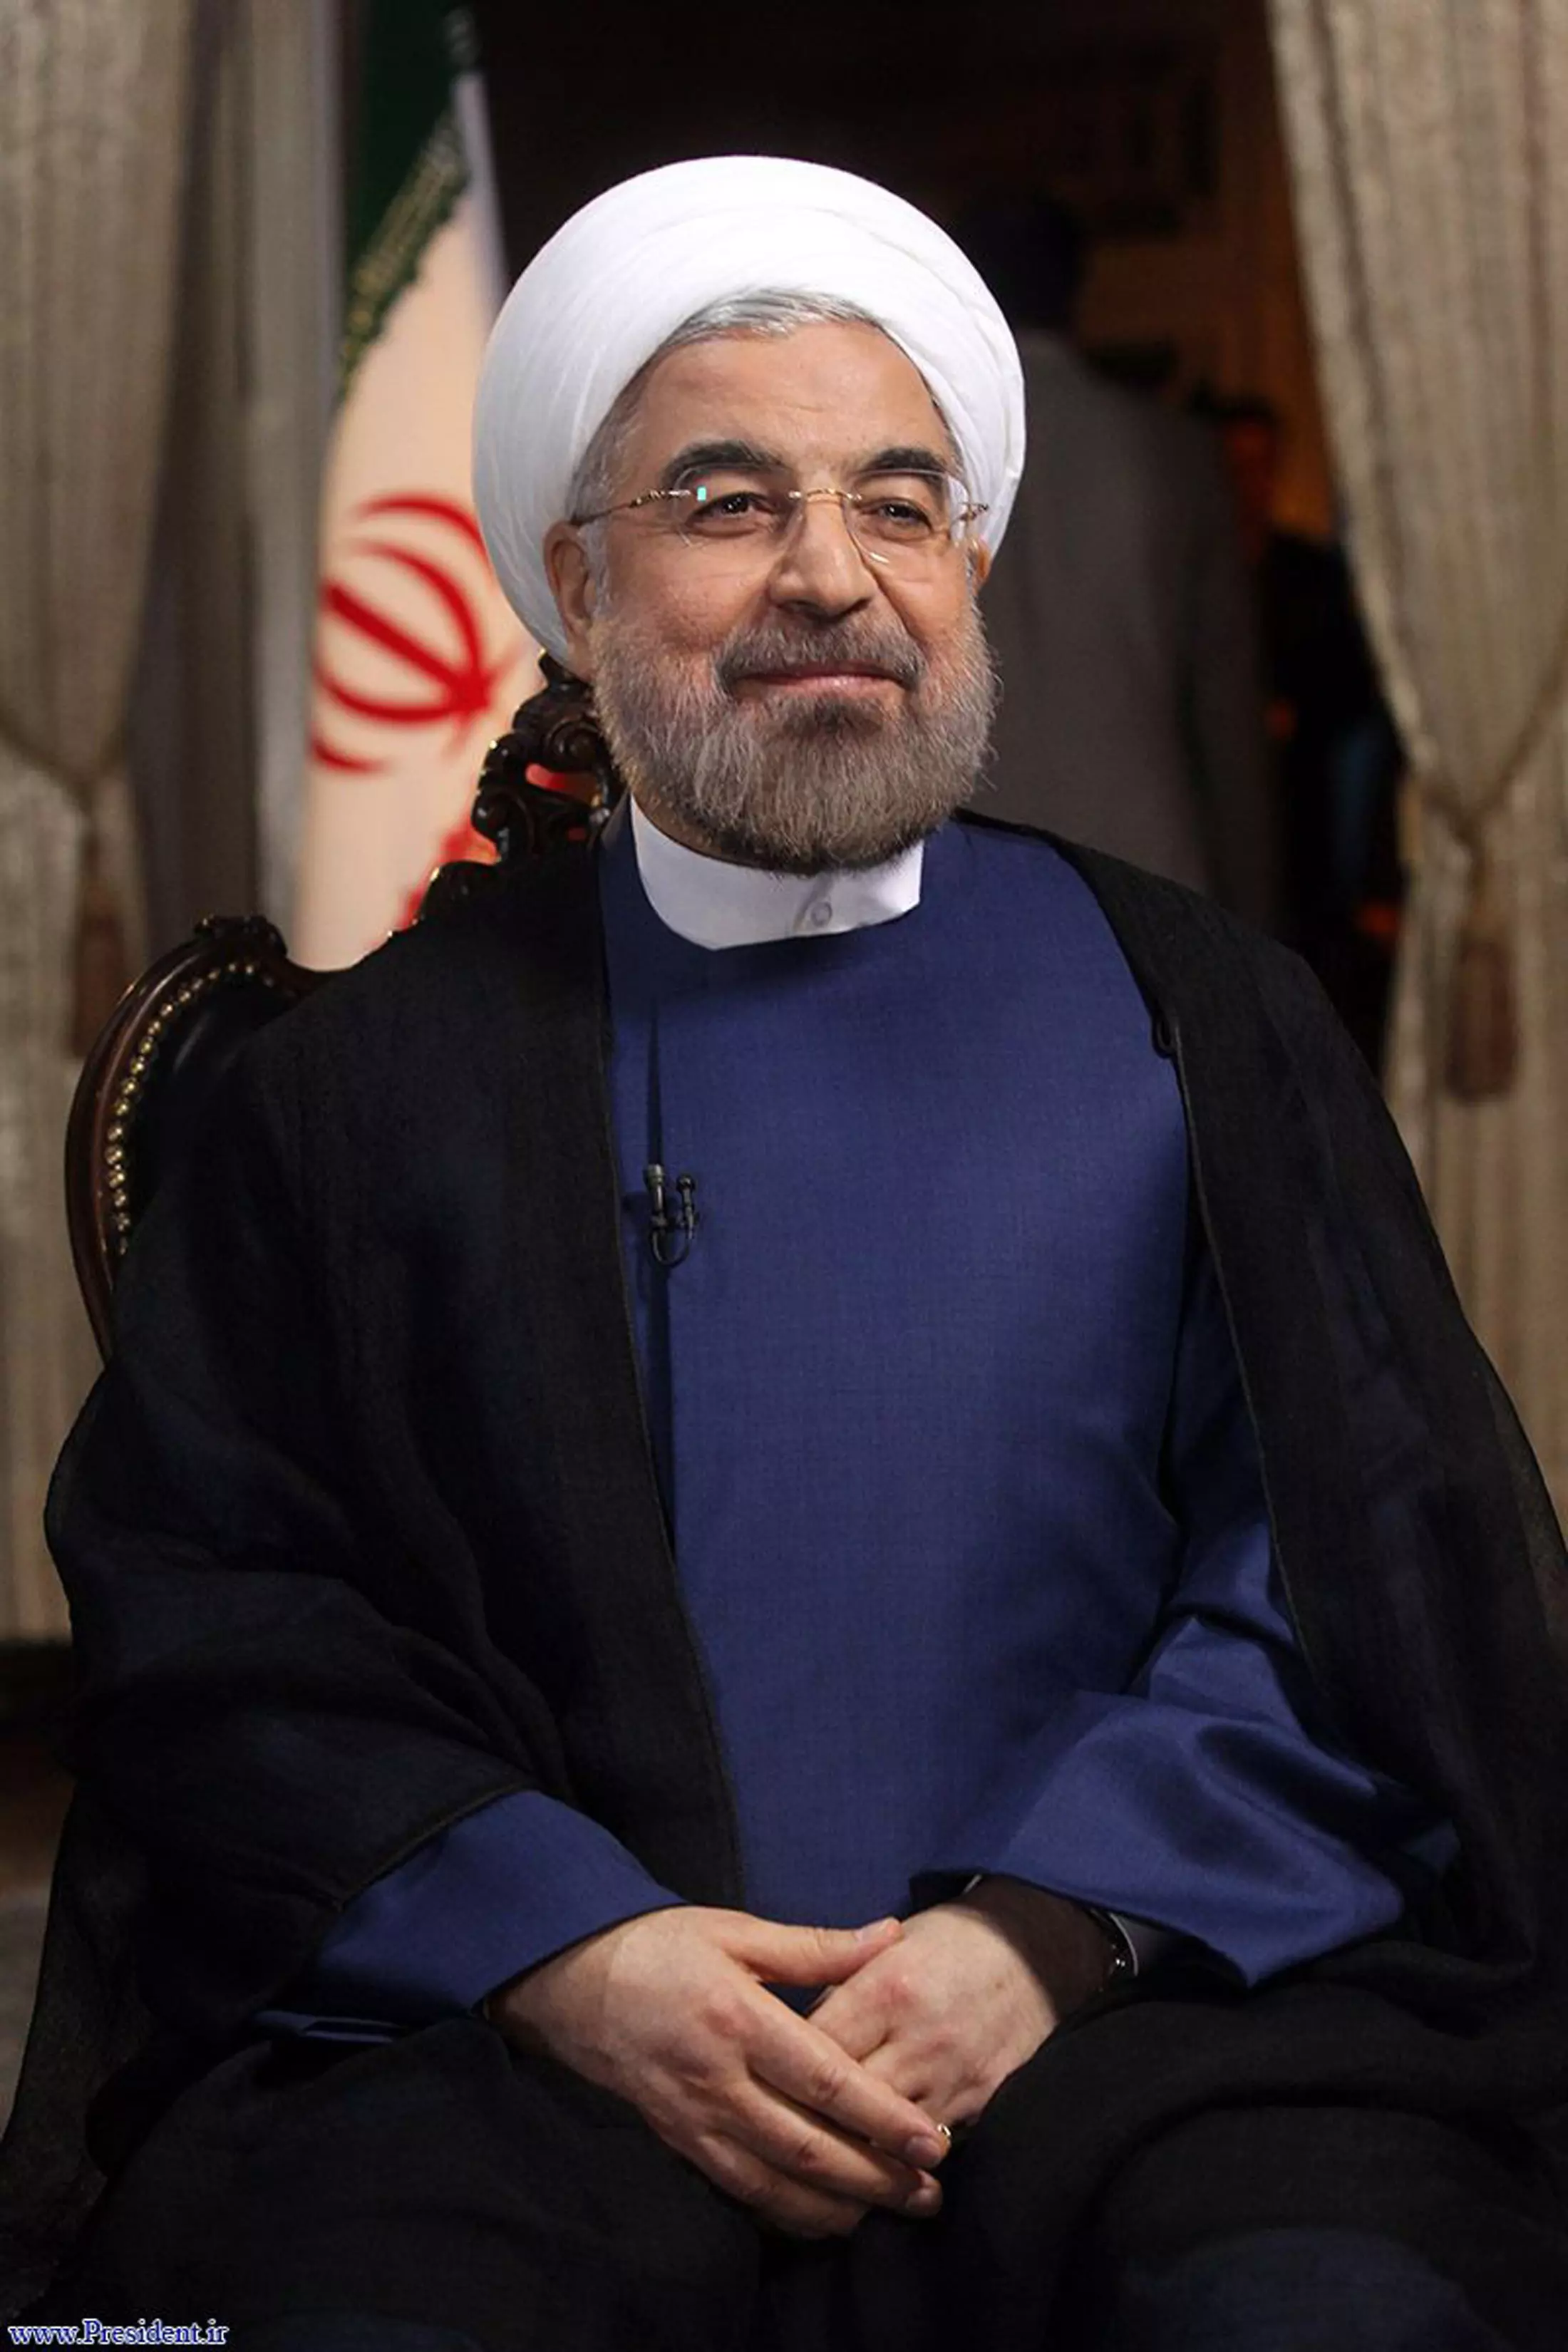 בכוונתו להציג לעולם את "פניה האמיתיות" של האומה האיראנית שוחרת השלום. רוחאני